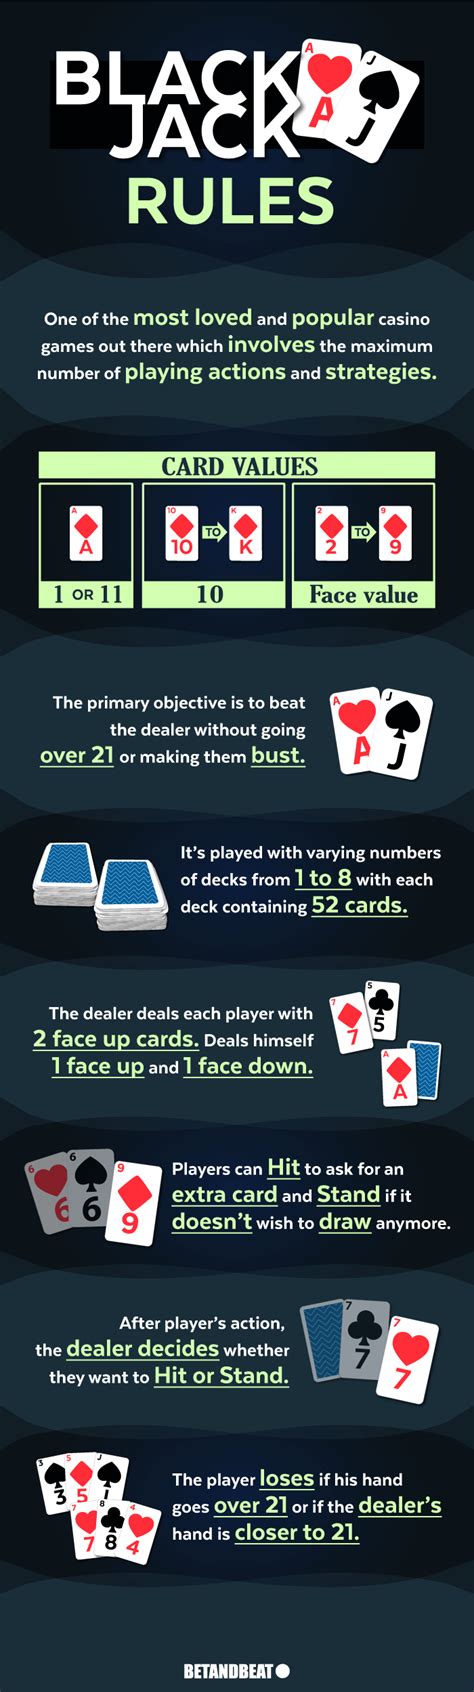 reglas blackjack casino